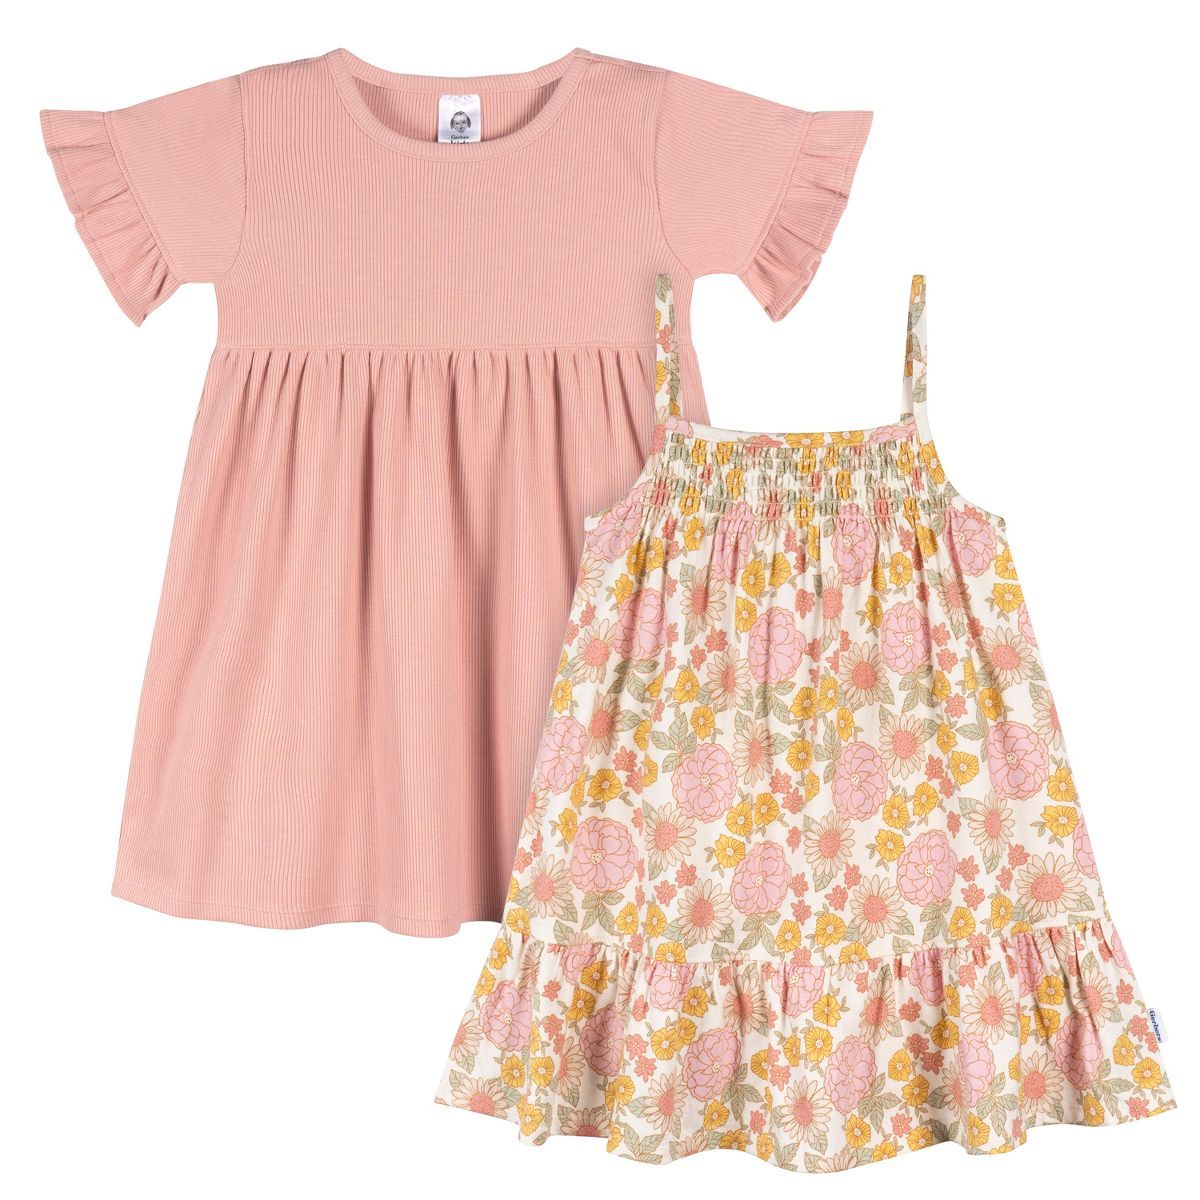 Gerber Toddler Girls' Short Sleeve and Sleeveless Dresses - 2-Pack | Target